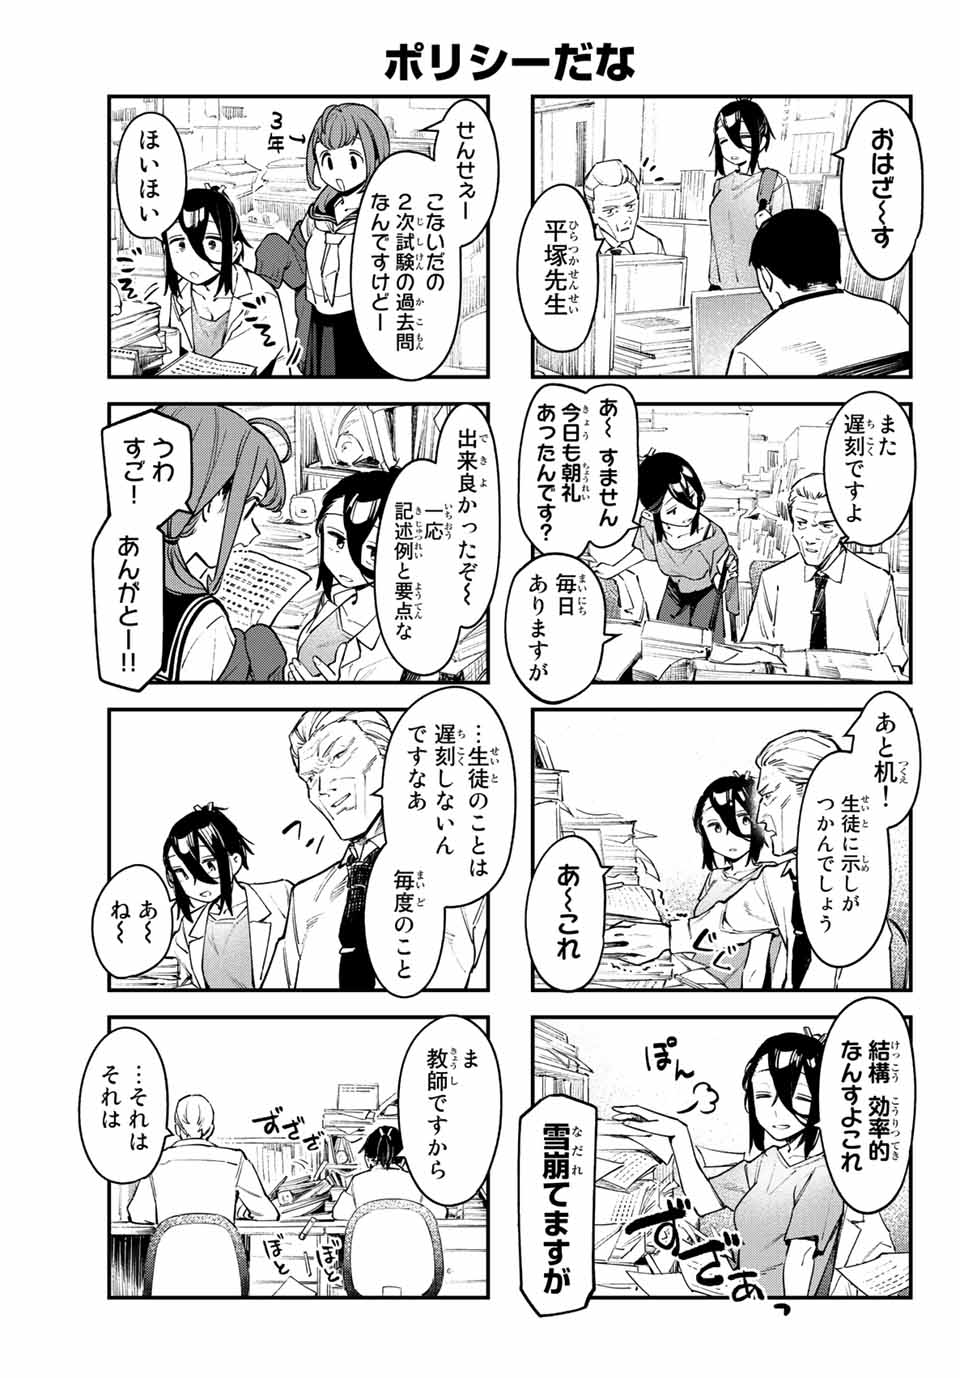 Seitokai mi mo Ana wa Aru! - Chapter 52 - Page 5